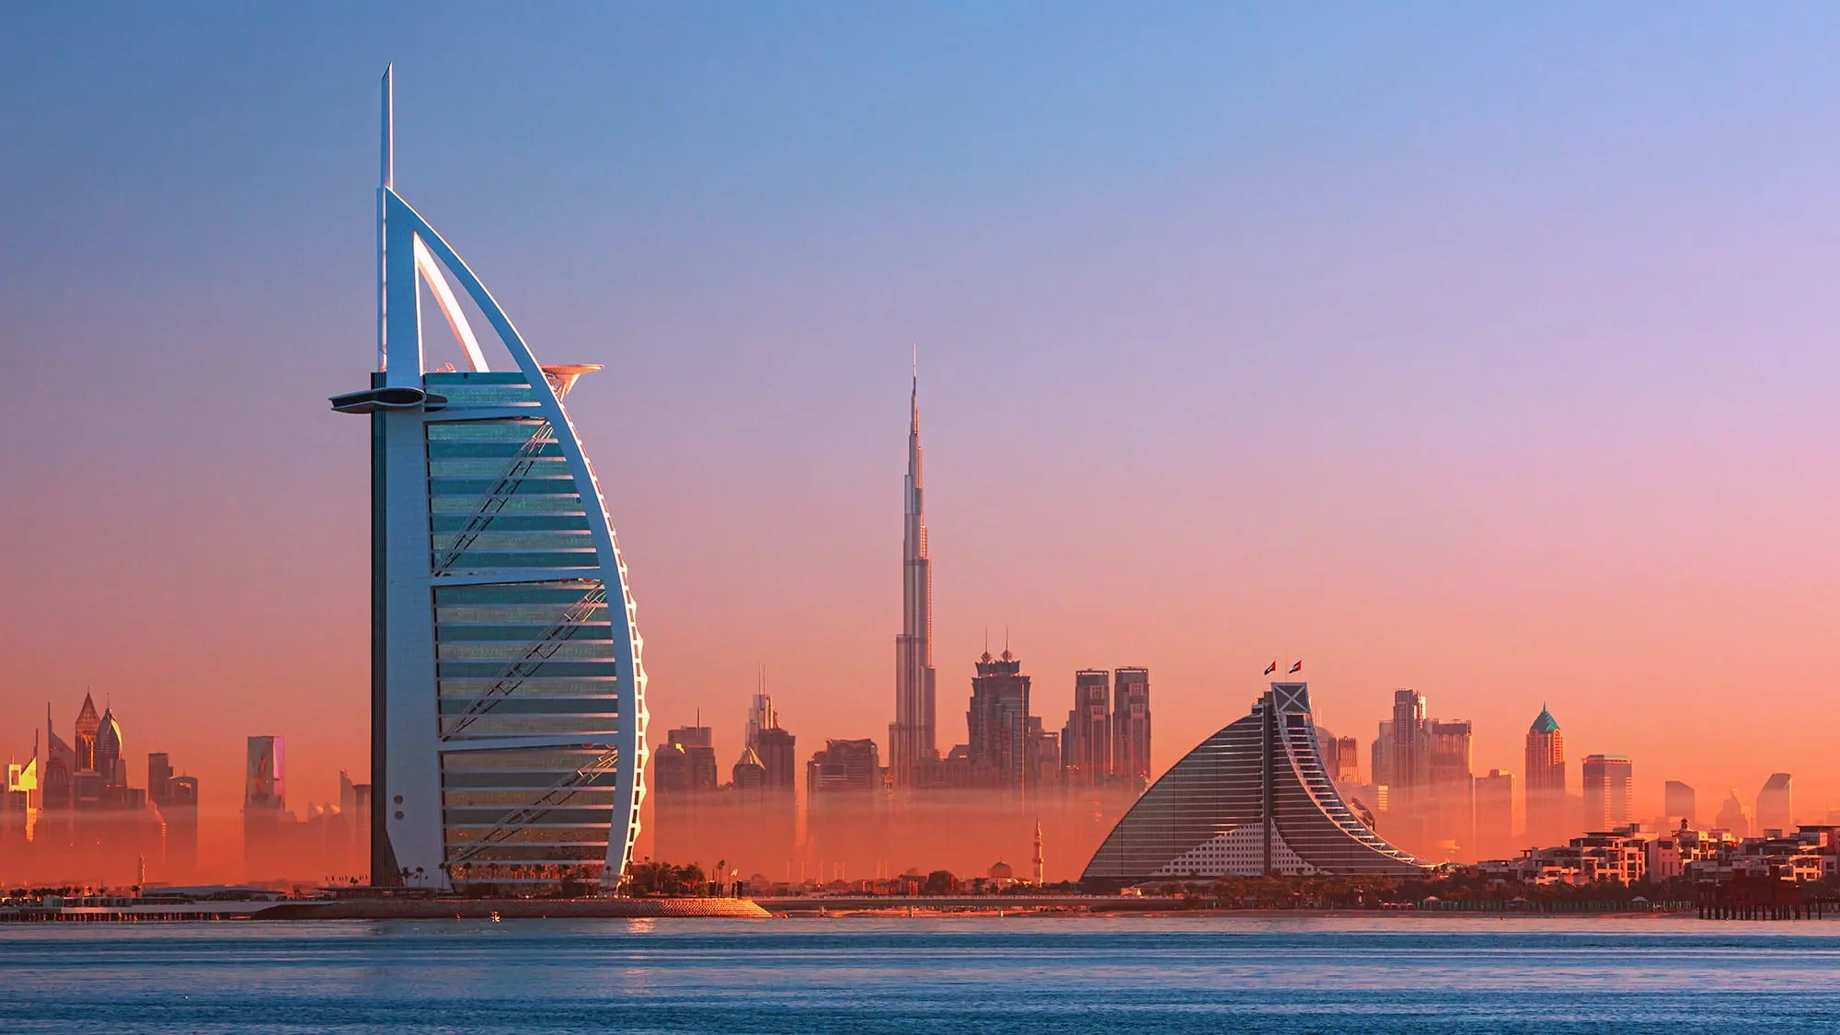 The Dubai skyline